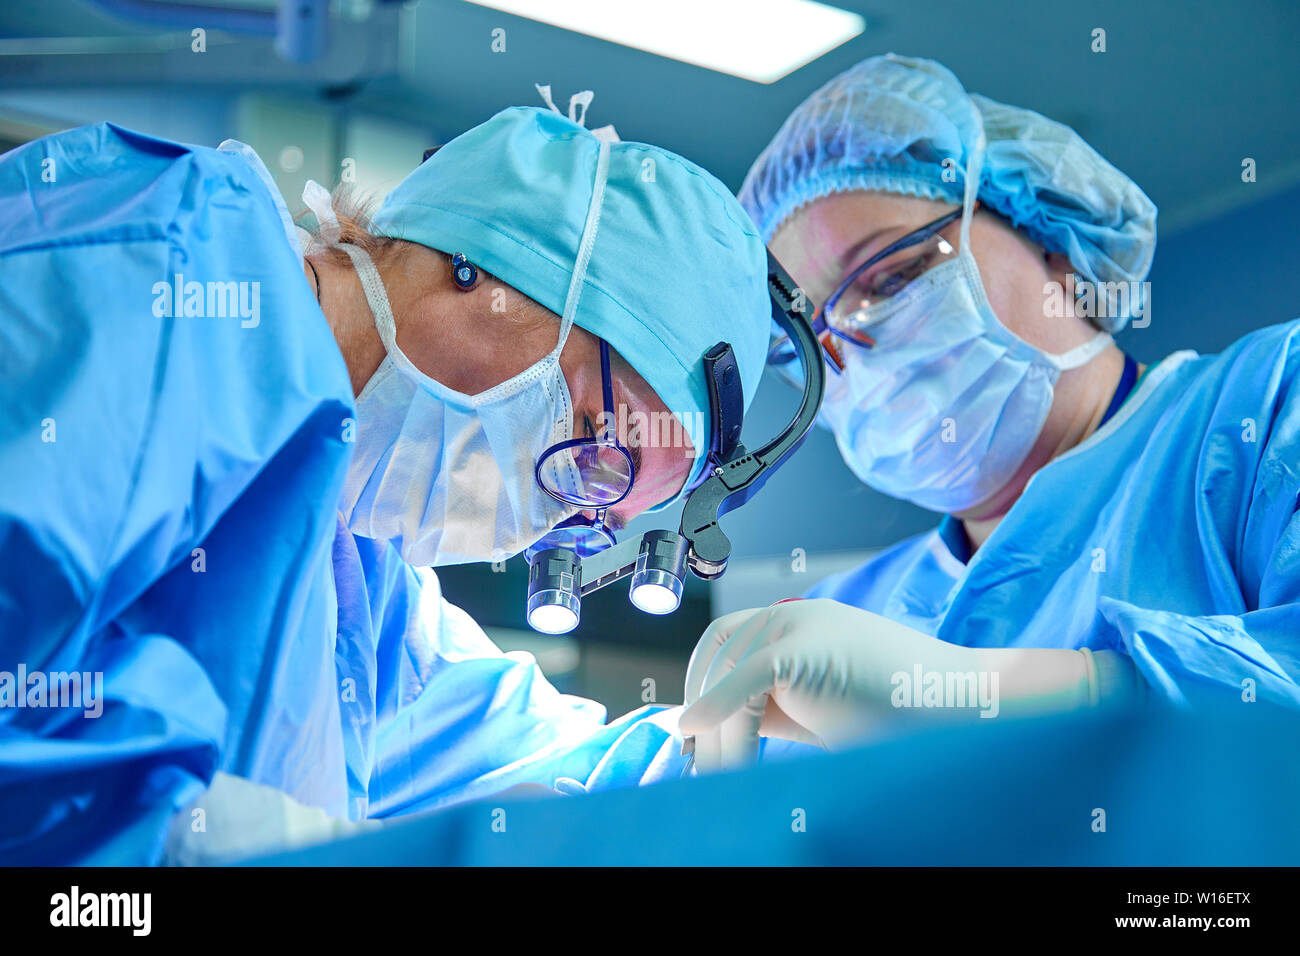 Eines Chirurgen Team in Uniform führt eine Operation auf einem Patienten in der Herzchirurgie Klinik. Die moderne Medizin, ein professionelles Team von Chirurgen, Gesundheit. Stockfoto